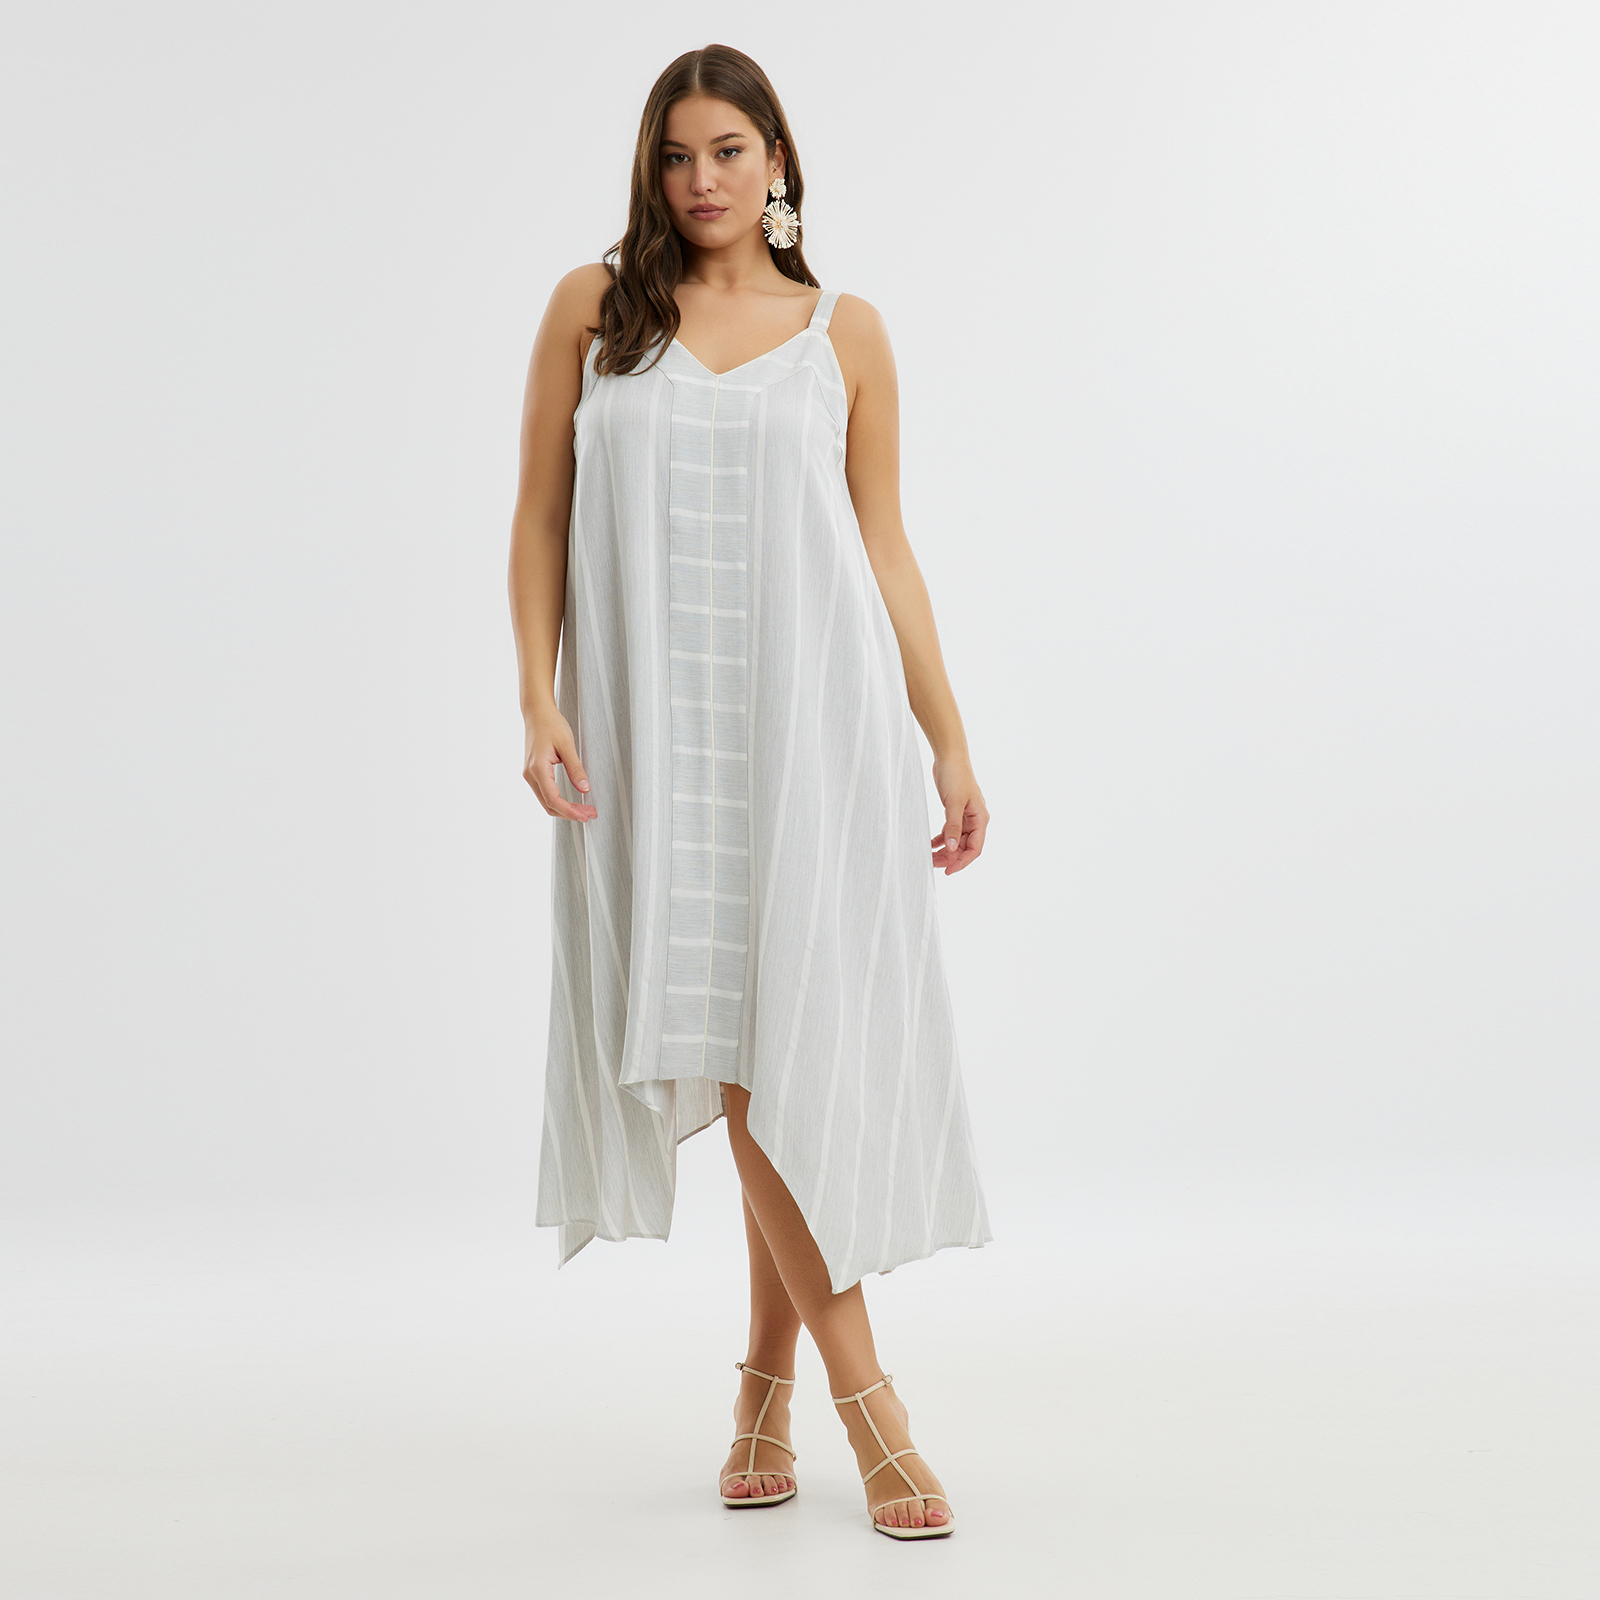 Φόρεμα αμάνικο ριγέ βισκόζη με modal 8101.7230-grey